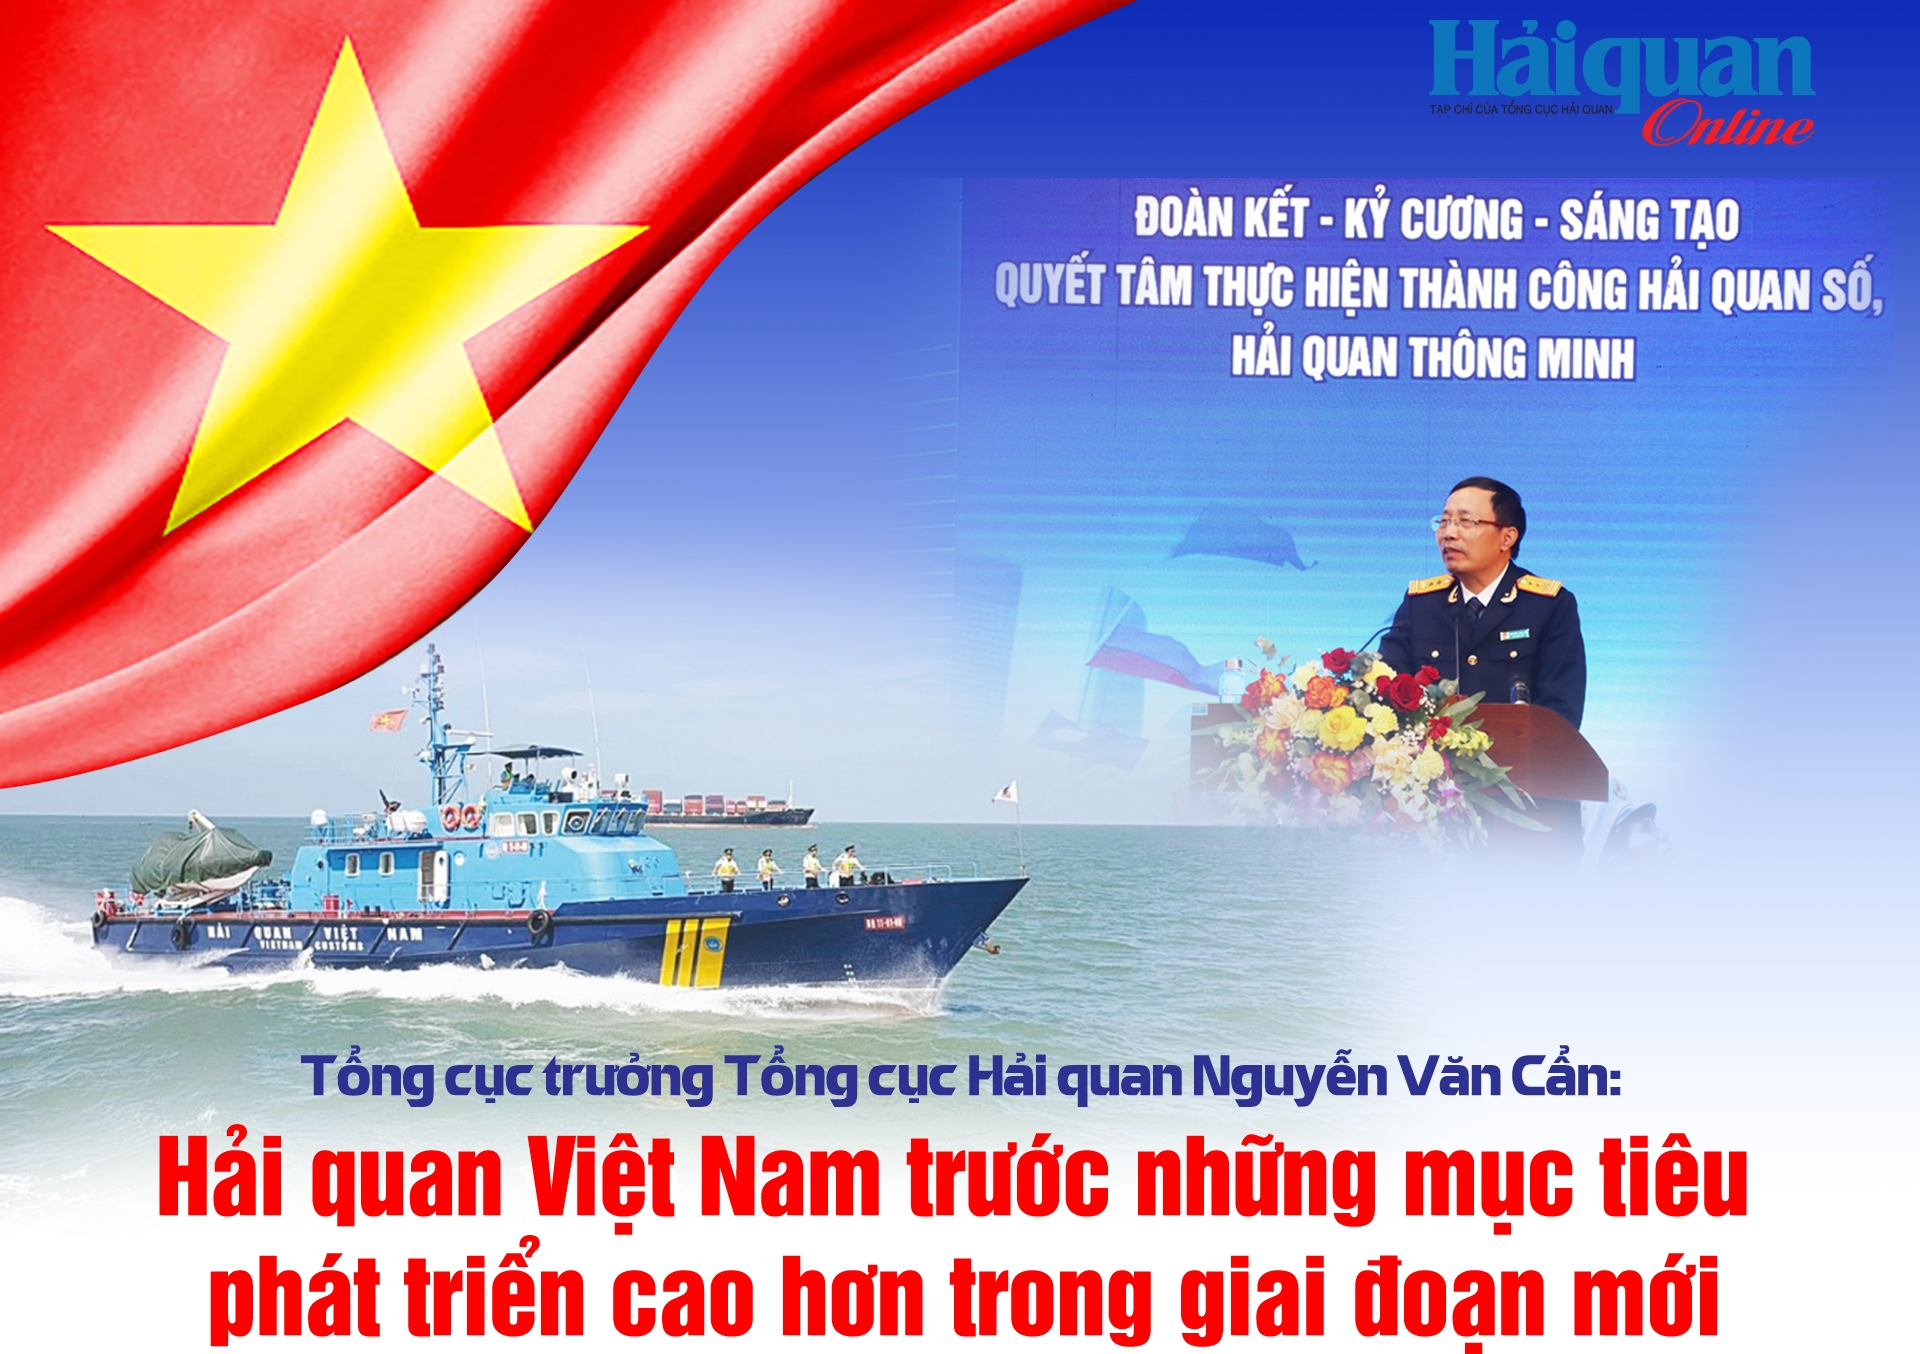 MEGASTORY: Tổng cục trưởng Nguyễn Văn Cẩn "Hải quan Việt Nam trước những mục tiêu phát triển cao hơn trong giai đoạn mới"